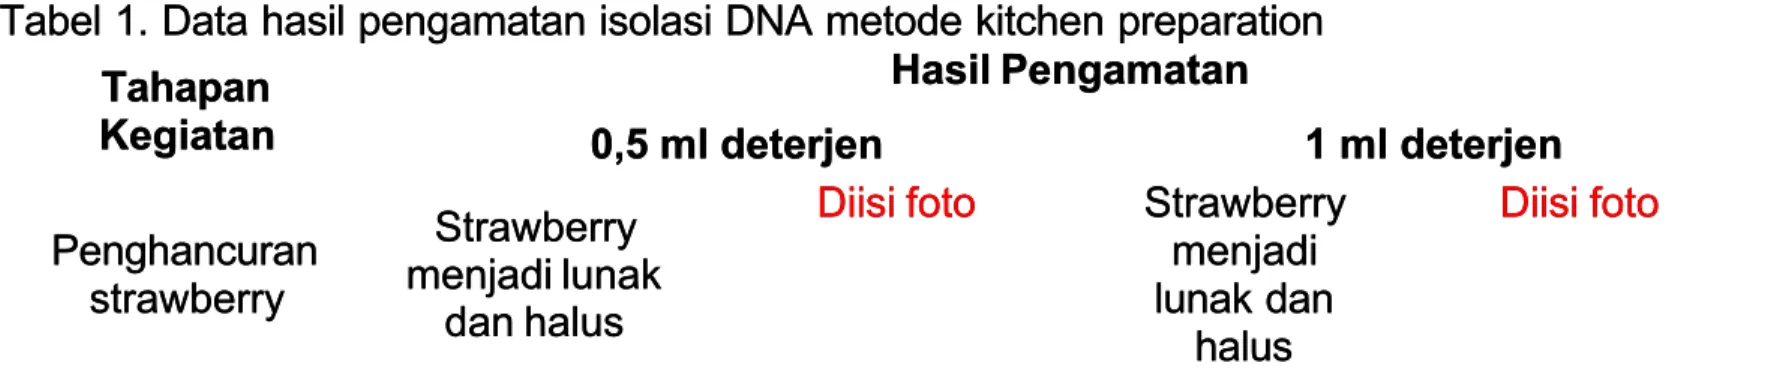 Tabel 1. Data hasil pengamatan isolasi DNA metode kitchen preparationTabel 1. Data hasil pengamatan isolasi DNA metode kitchen preparation